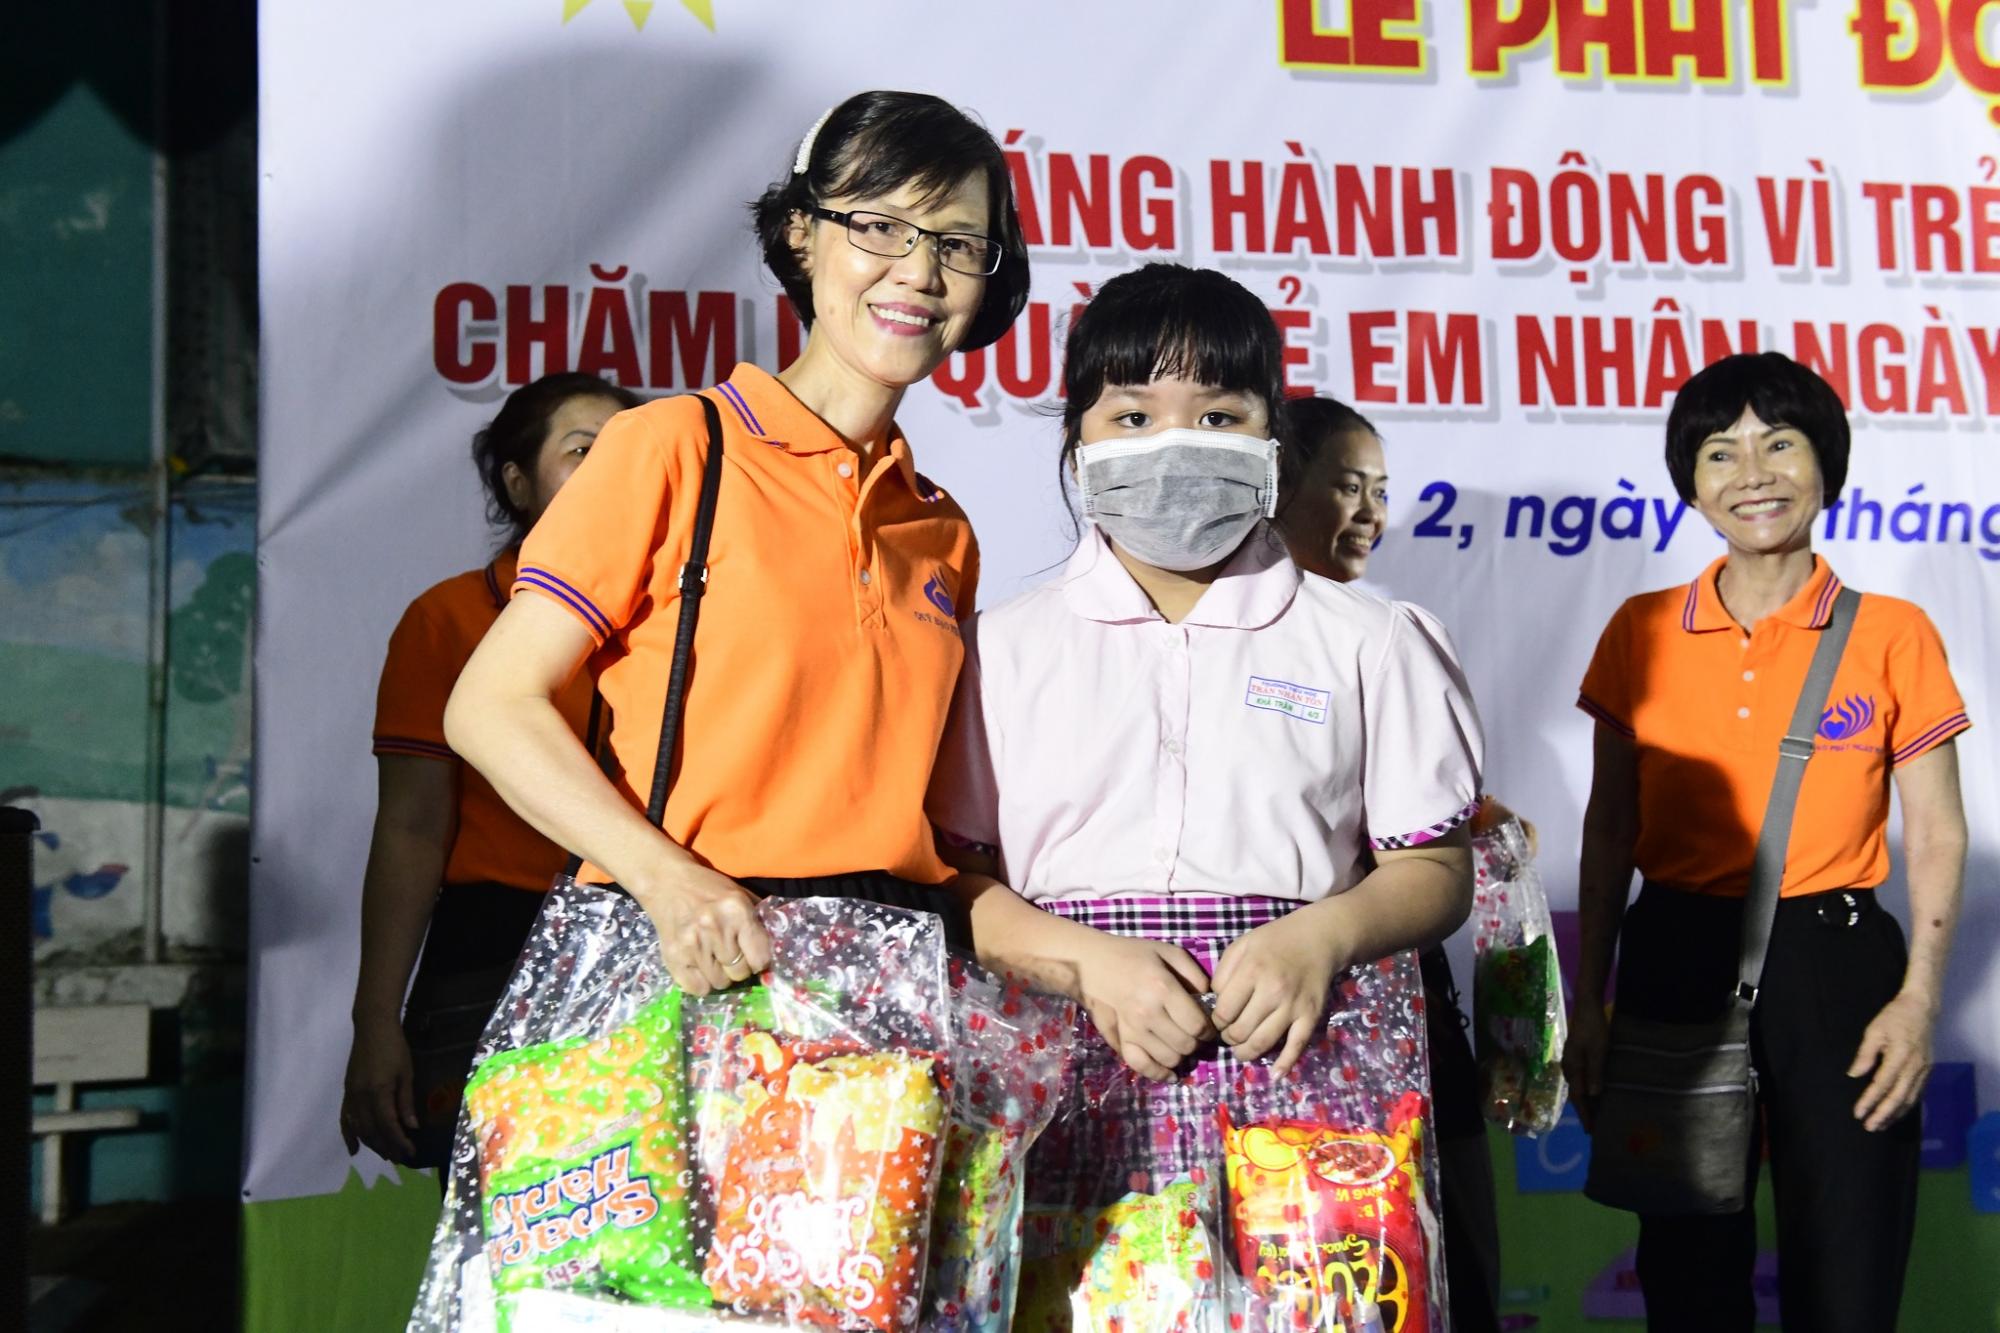 Chùa Giác Ngộ và Quỹ Đạo Phật Ngày Nay ủng hộ 4.400 món quà tặng đến hơn 600 em thiếu nhi tại địa phương